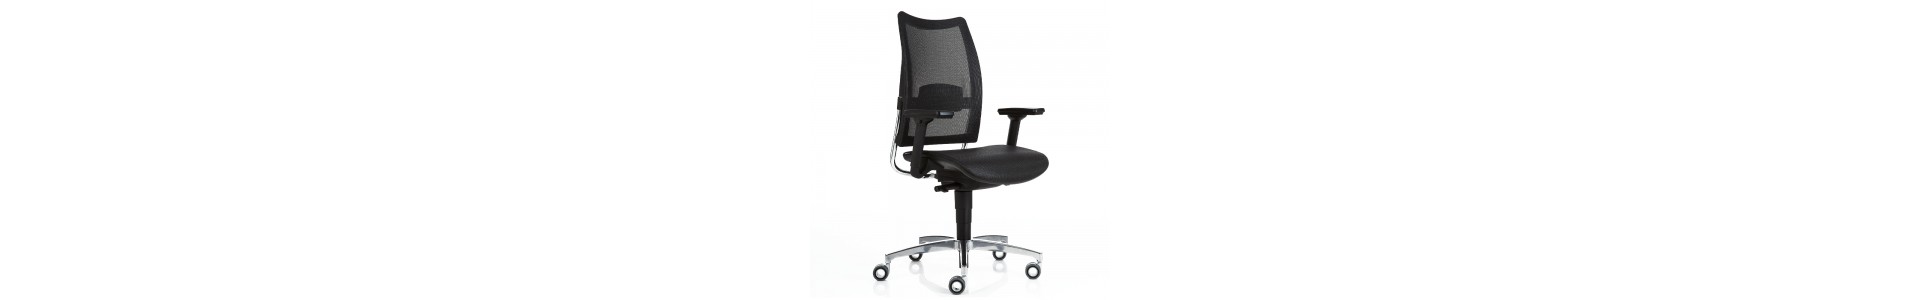 Compra sillas opertivas Luxy. Catálogo sillas de oficinas modernas